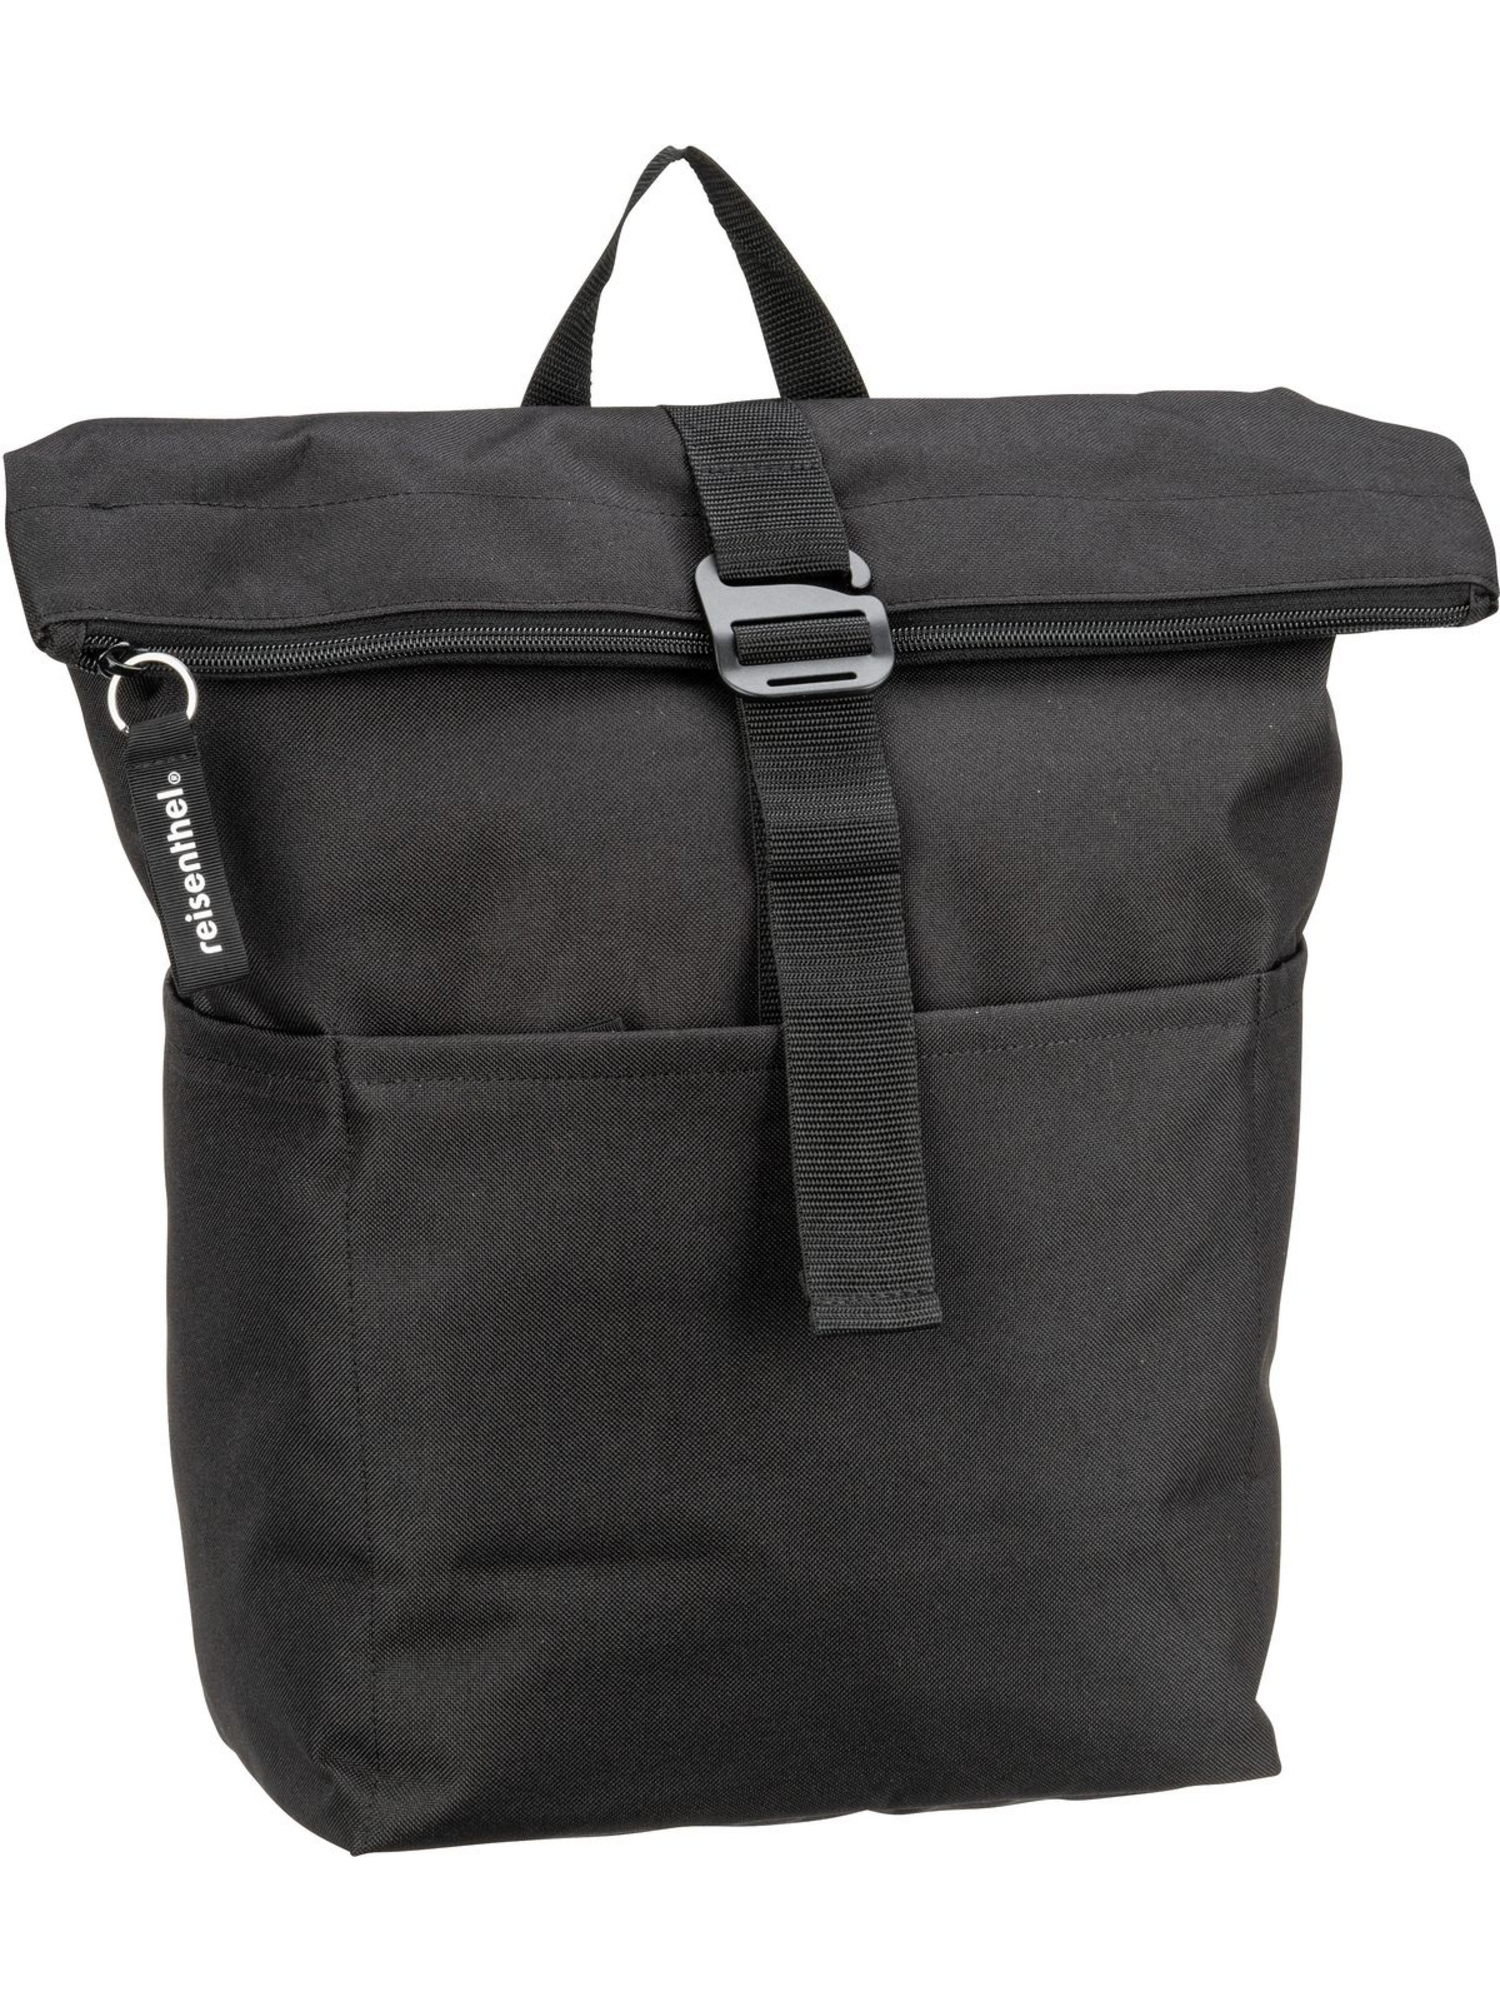 Рюкзак Reisenthel Rolltop rolltop backpack, черный